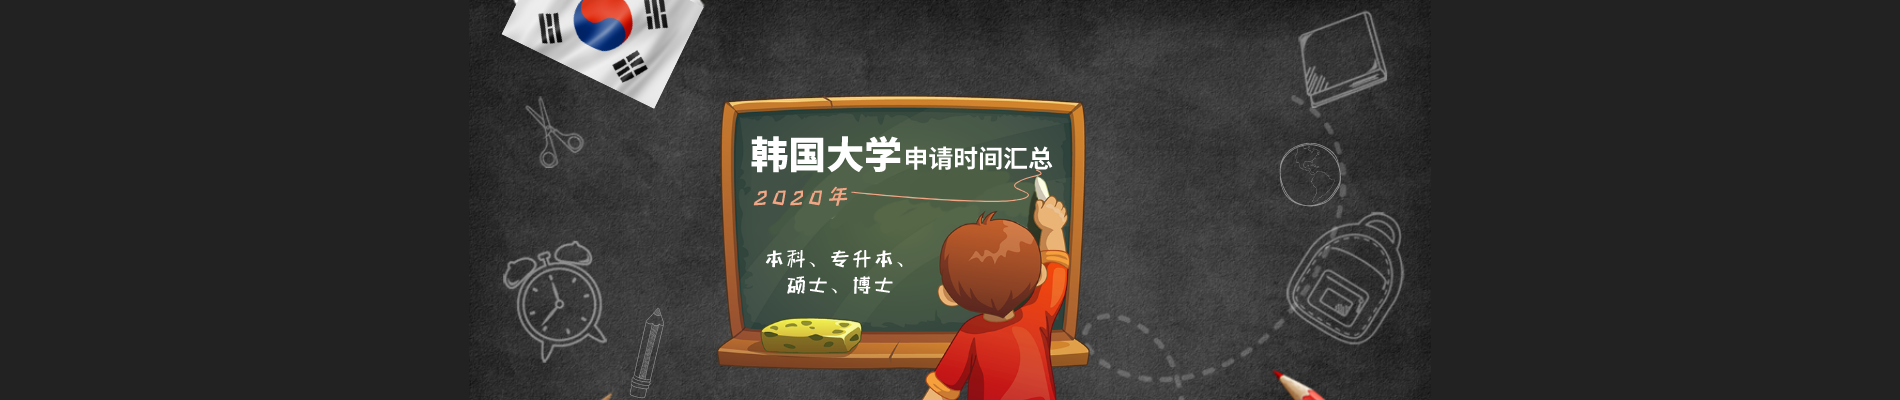 2020年韩国大学申请时间表